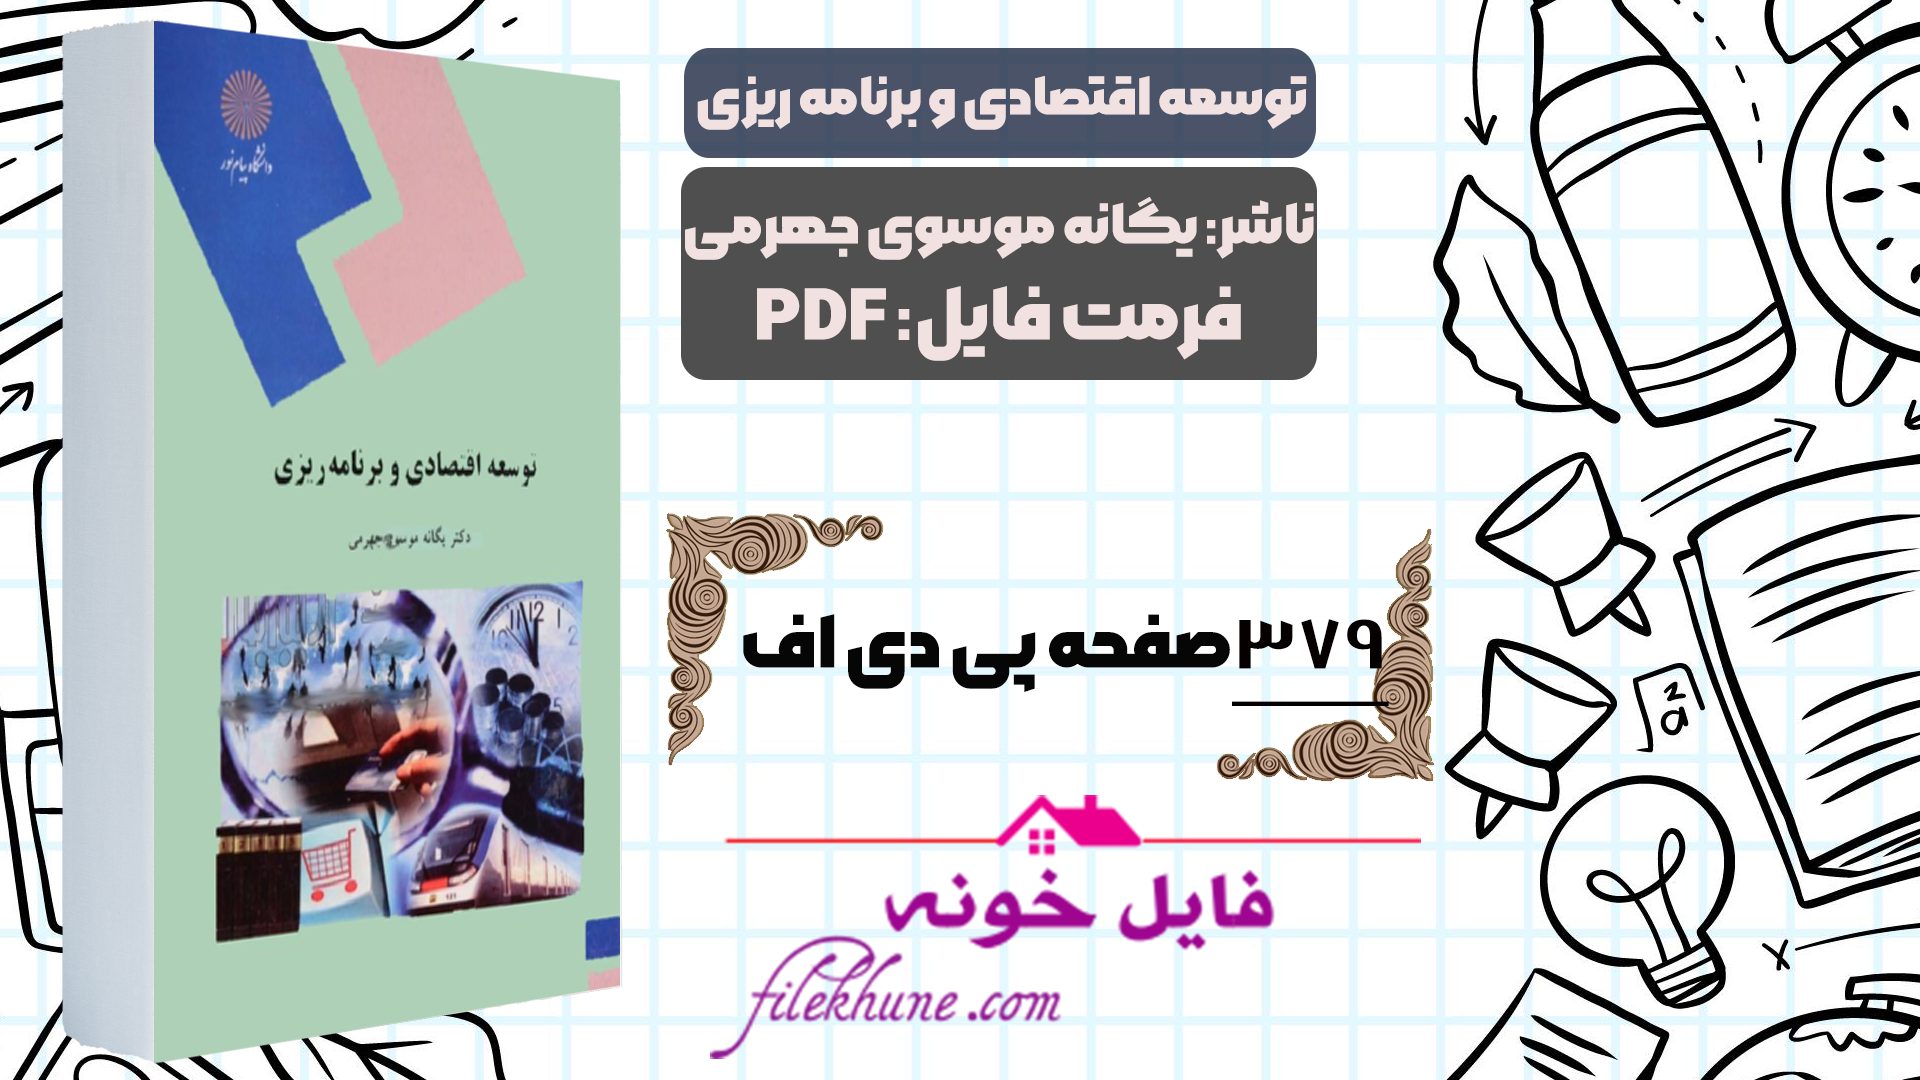 دانلود کتاب توسعه اقتصادی و برنامه ریزی یگانه موسوی جهرمی دانشگاه پیام نور PDF - فایل خونه